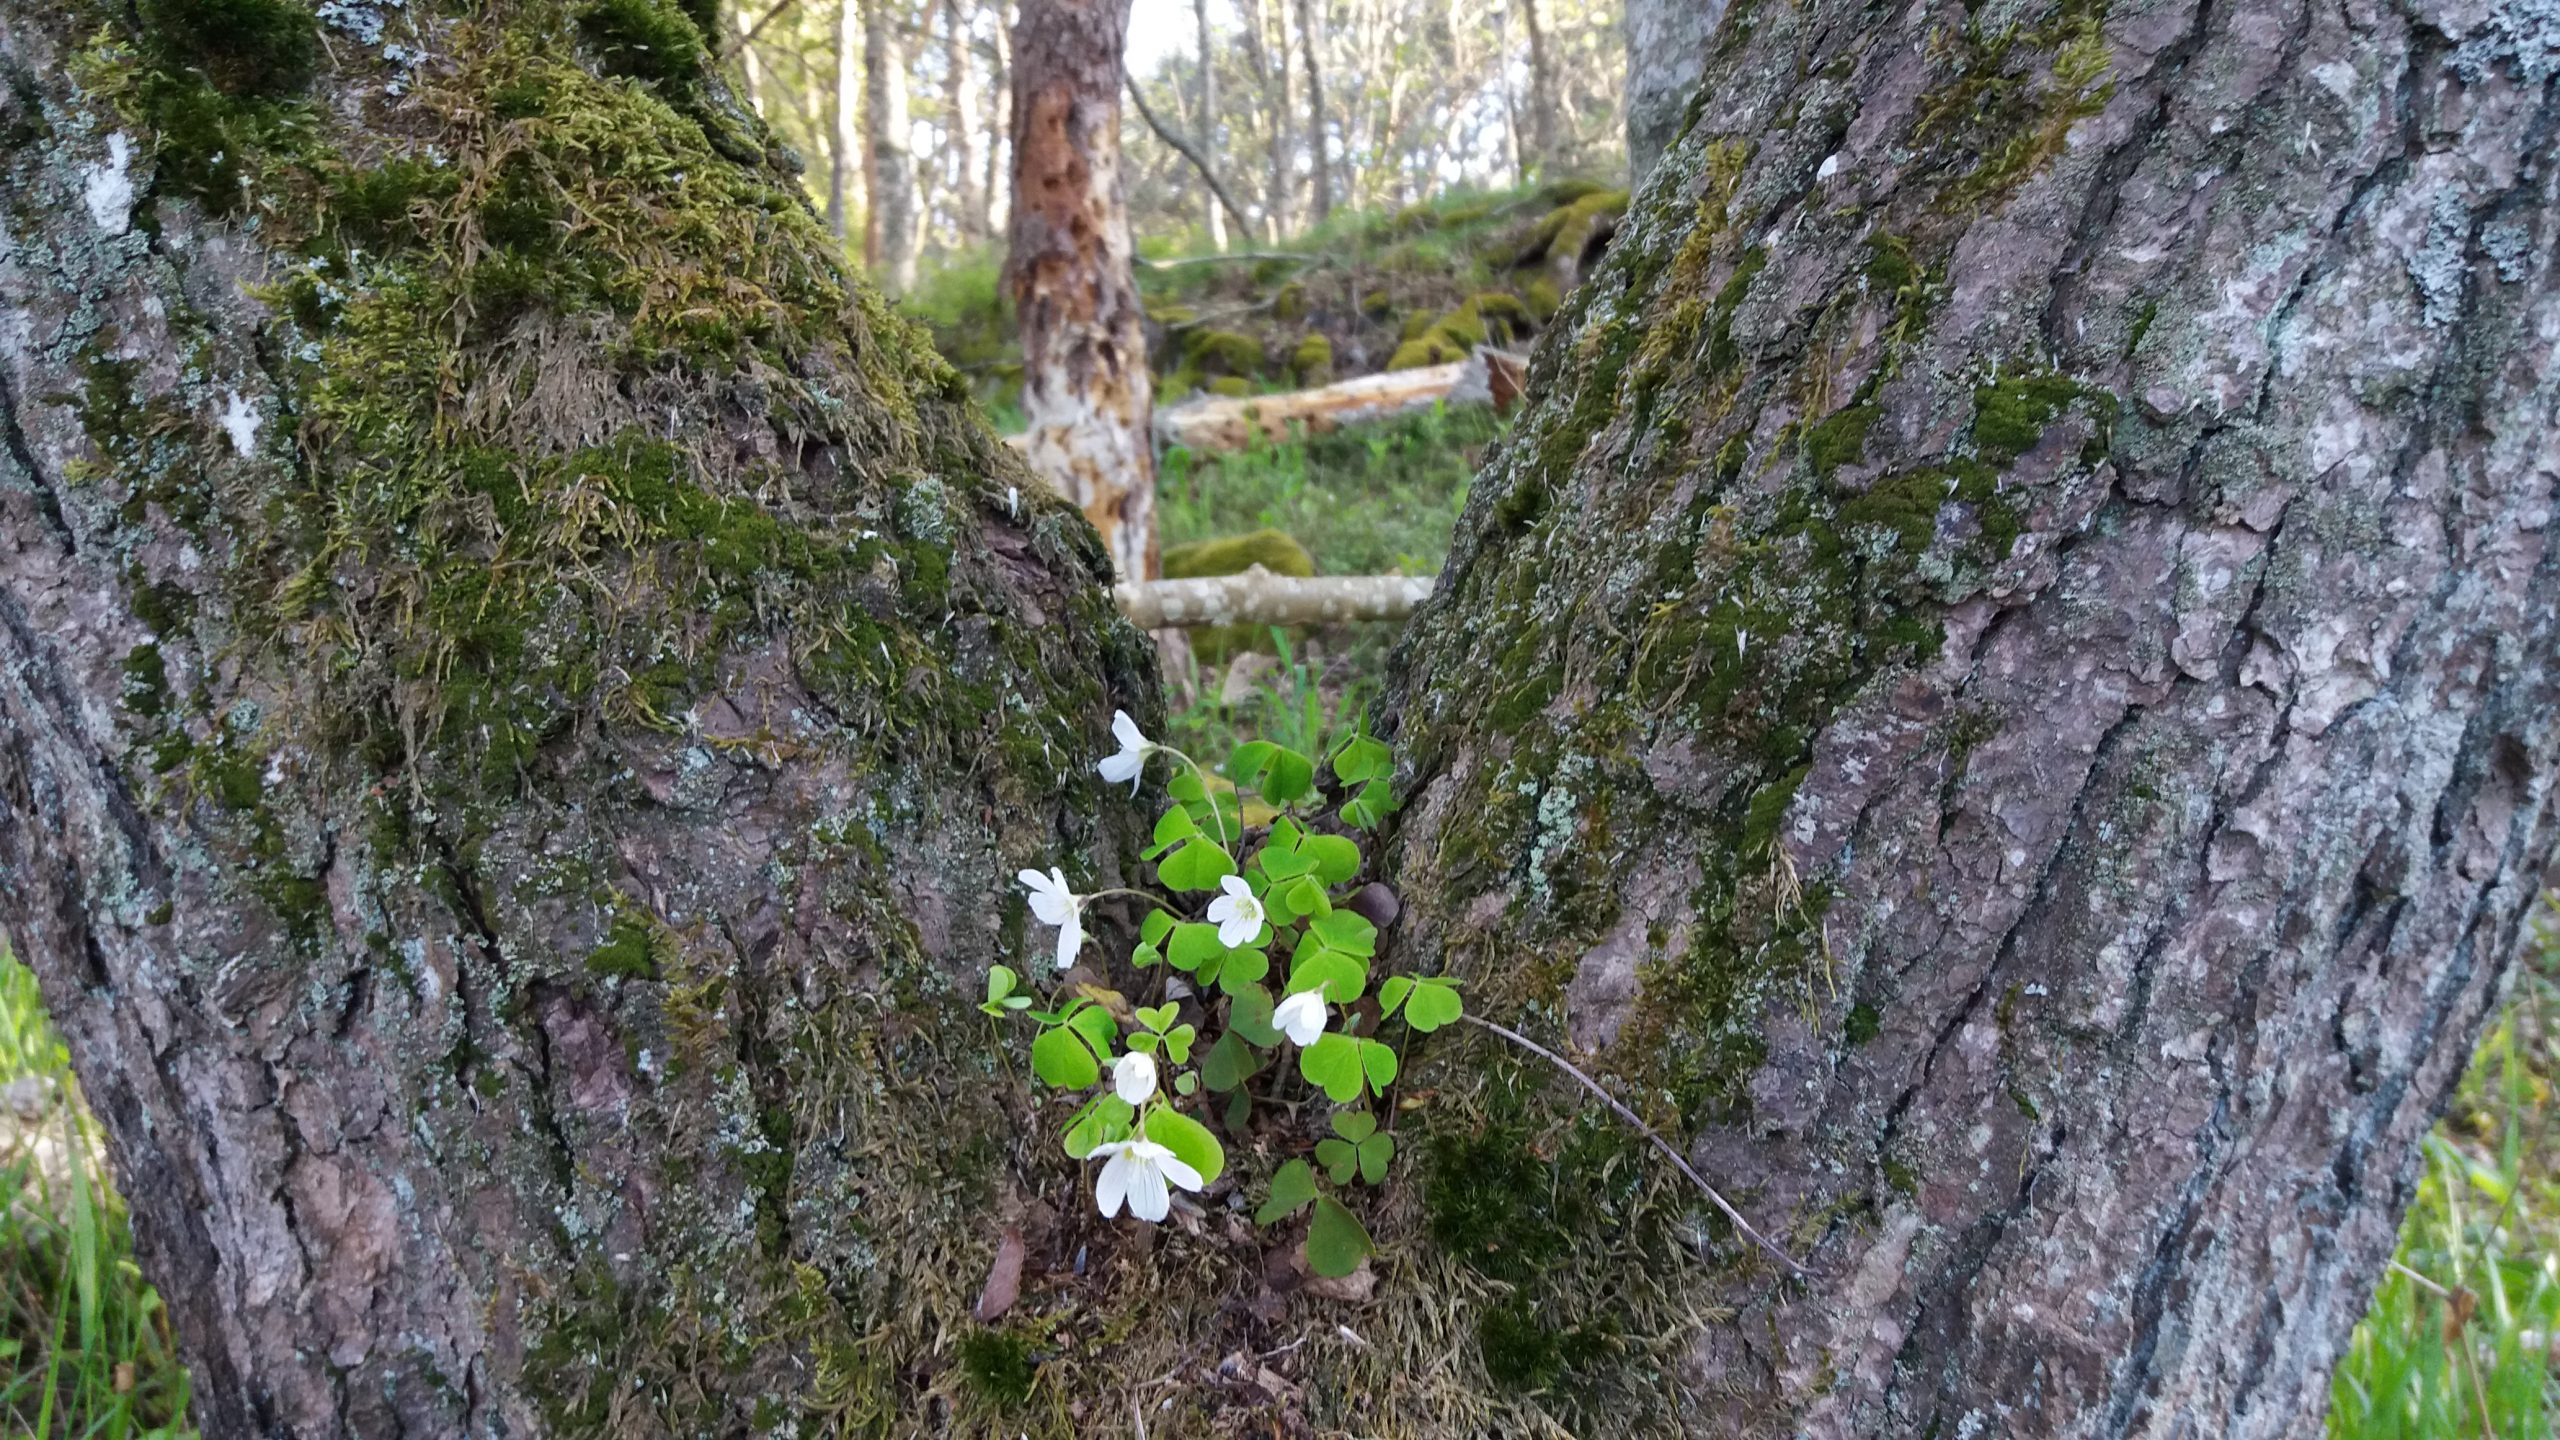 Lähikuvassa kahden puun tyvet, joiden välissä kasvaa ketunleipä pienine valkoisine kukkineen.